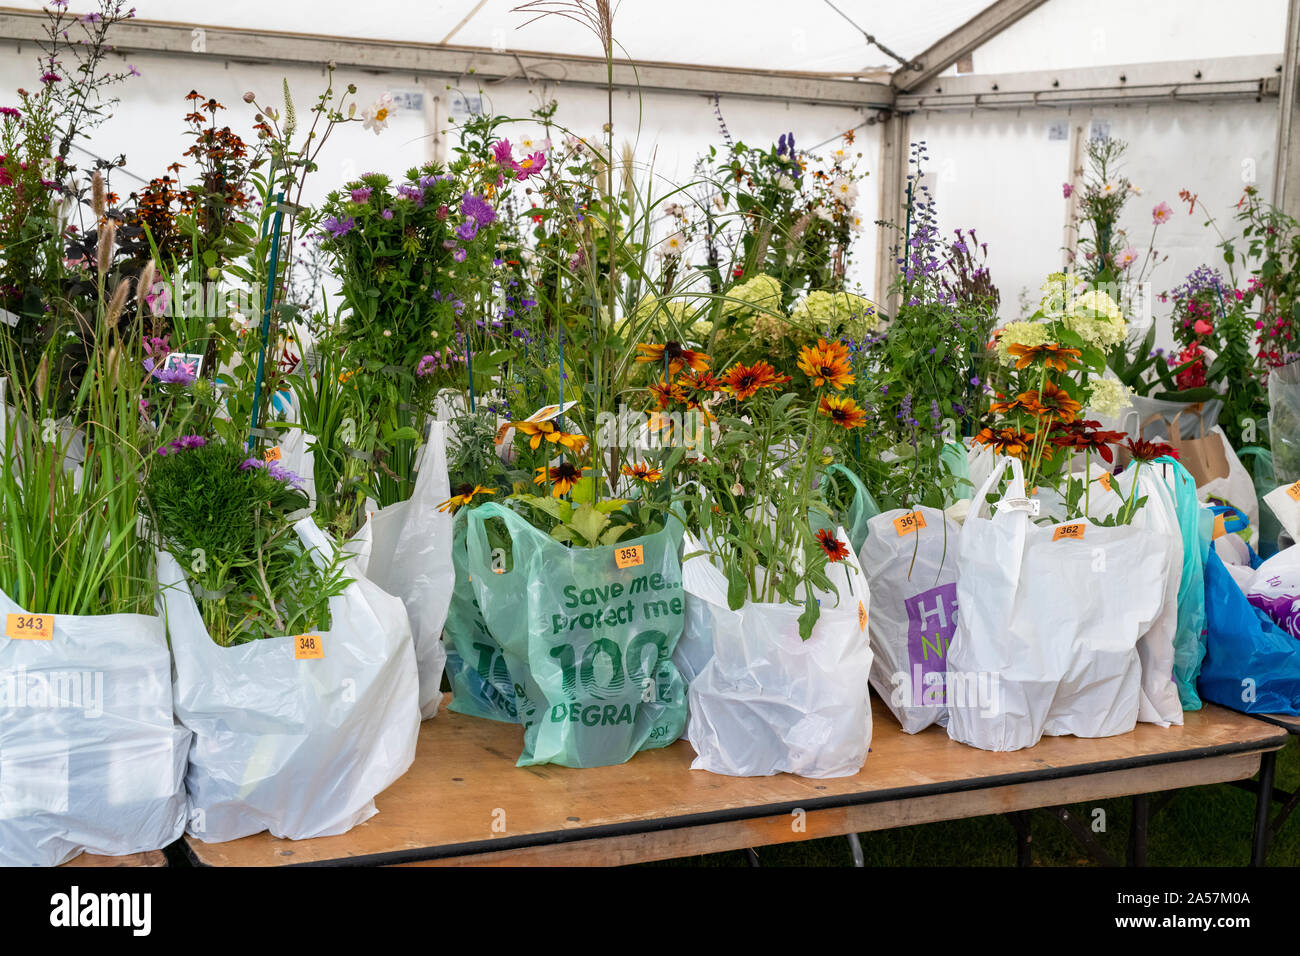 Flores compradas en bolsas de plástico esperando a ser recolectadas en un show de flores, Reino Unido Foto de stock